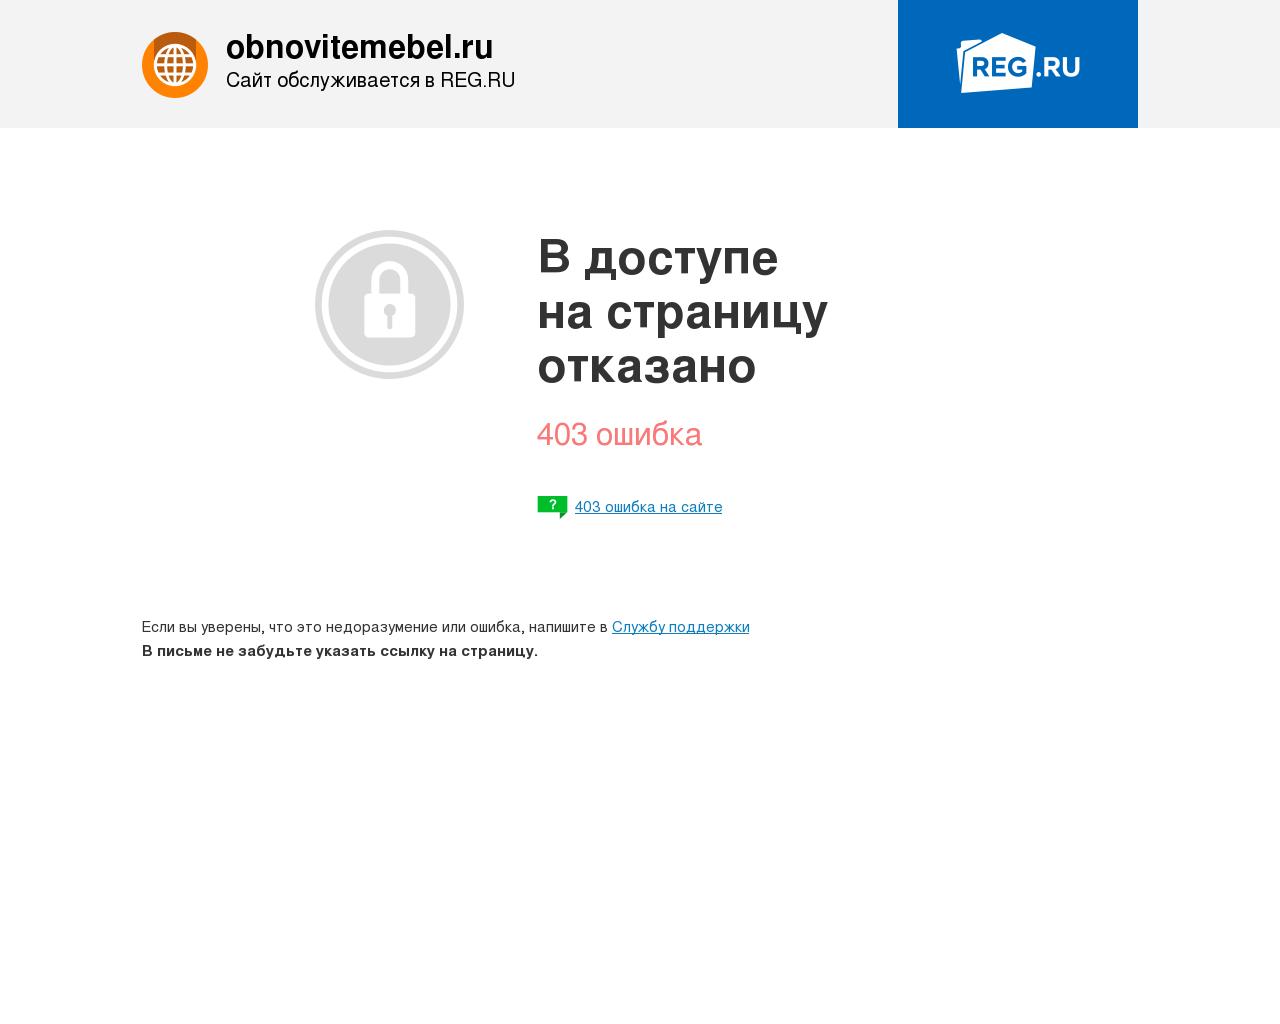 Изображение сайта obnovitemebel.ru в разрешении 1280x1024